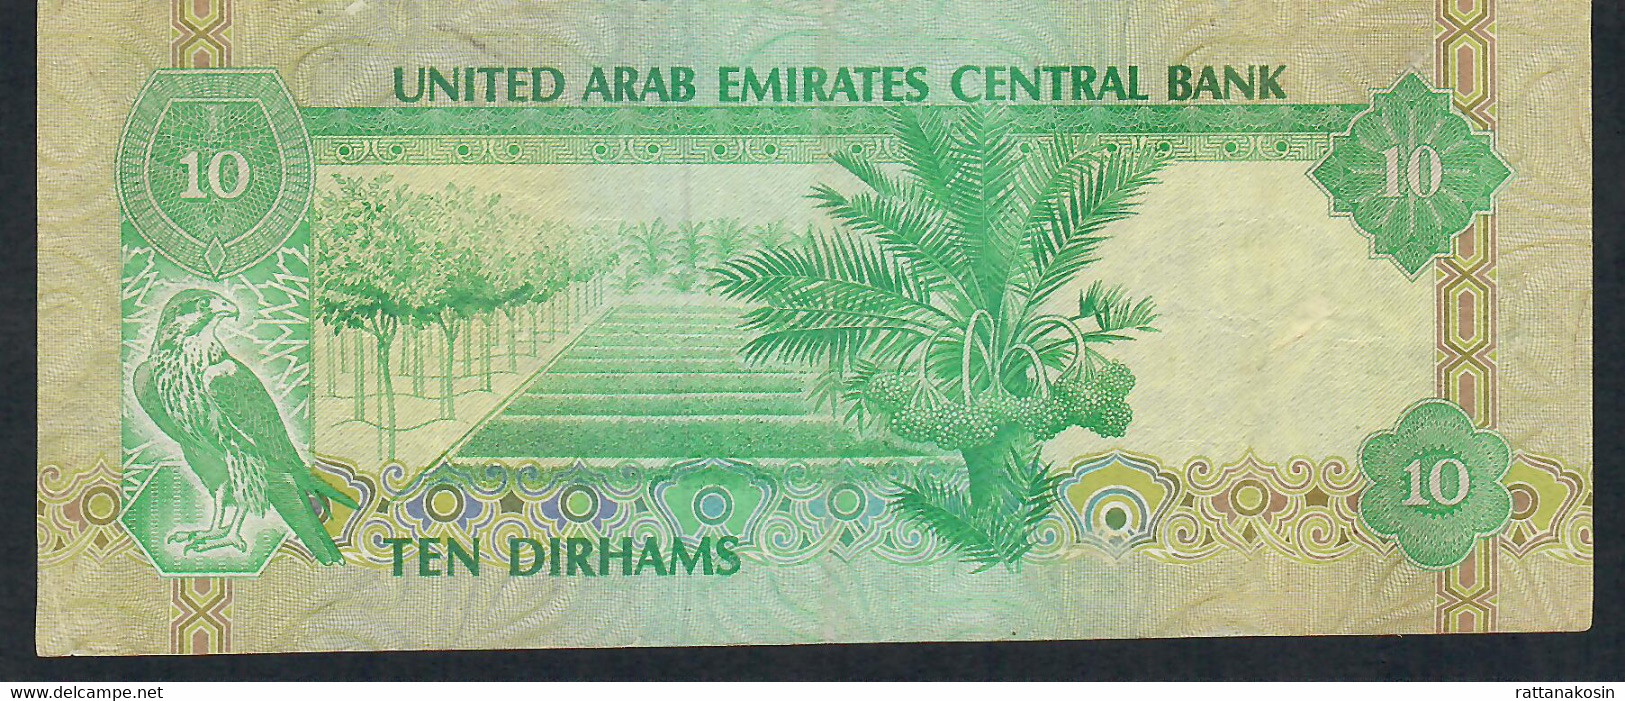 UNITED ARAB EMIRATES P8 10 DIRHAMS 1982 VF+  NO P.h. ! - Ver. Arab. Emirate